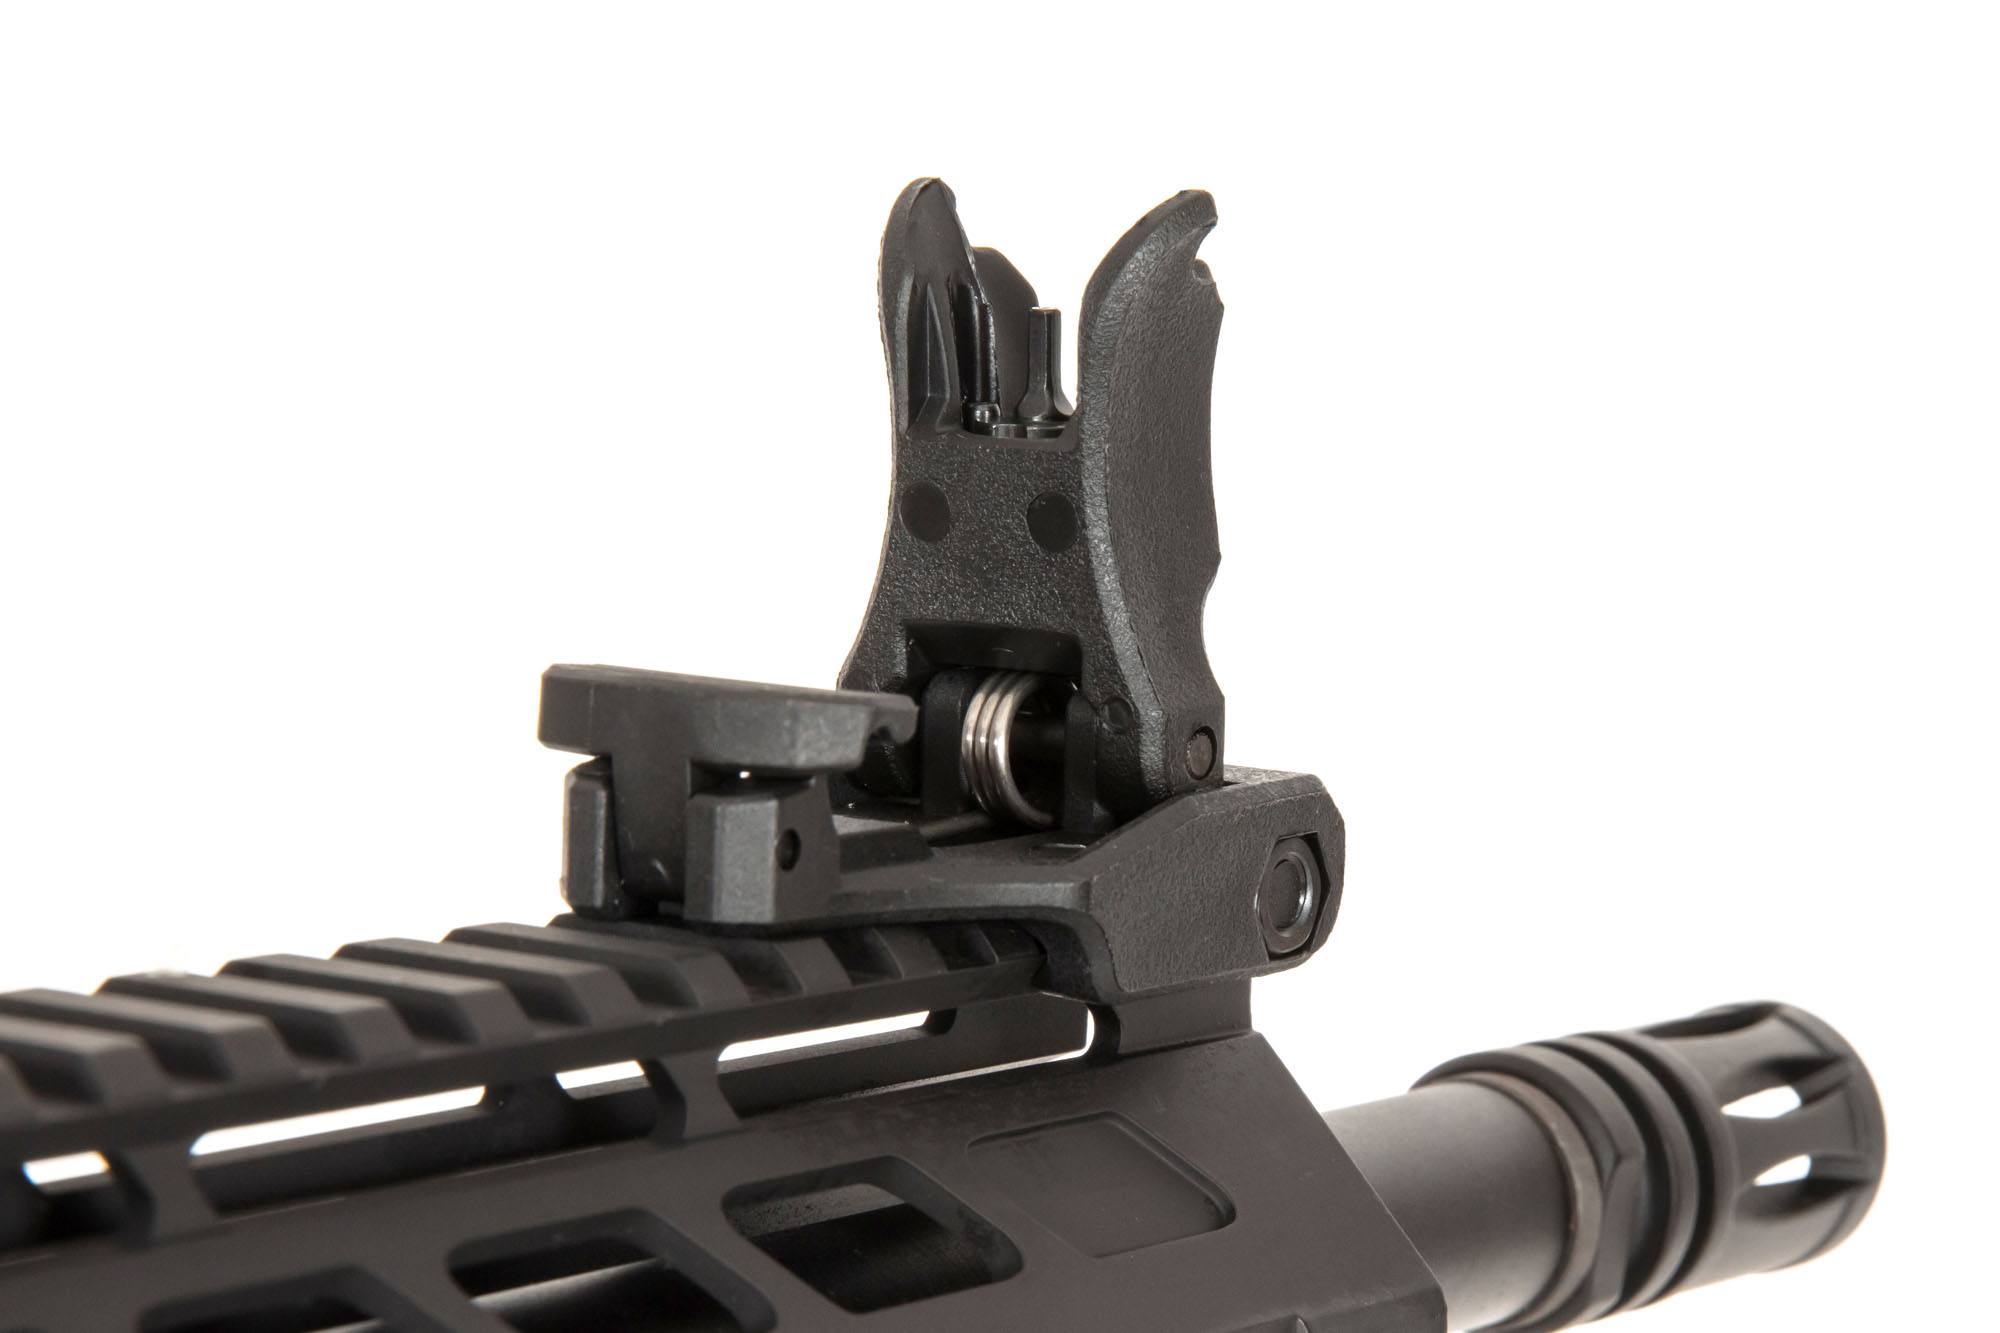 RRA SA-E14 EDGE ™ 2.0 Carbine Replica - Black by Specna Arms on Airsoft Mania Europe